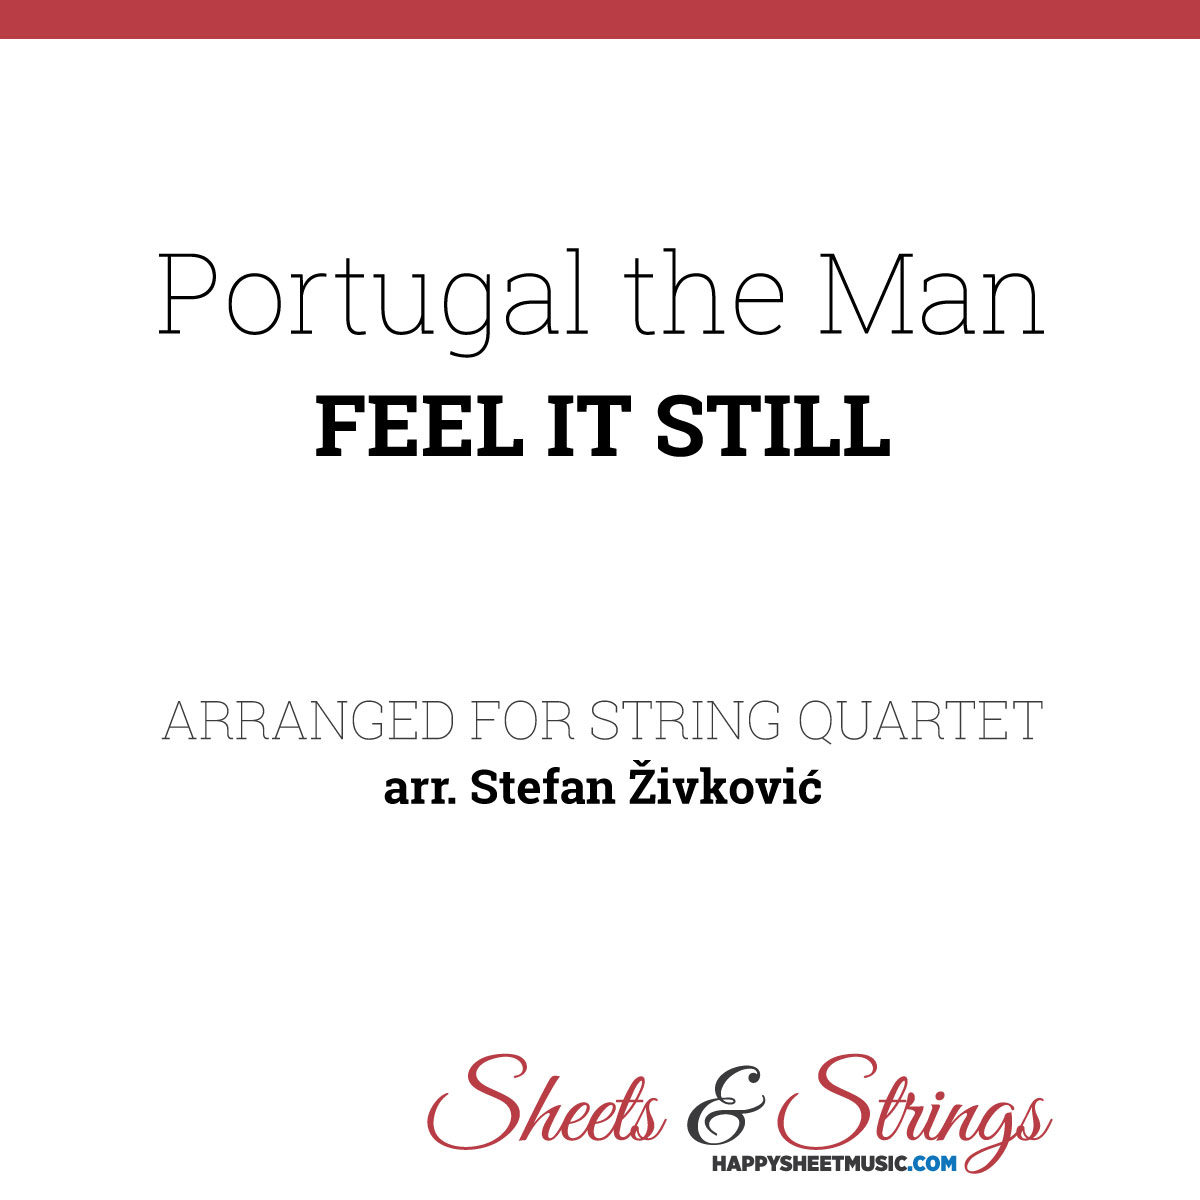 Portugal. The Man - Feel it Still Sheet Music for String Quartet - Music Score